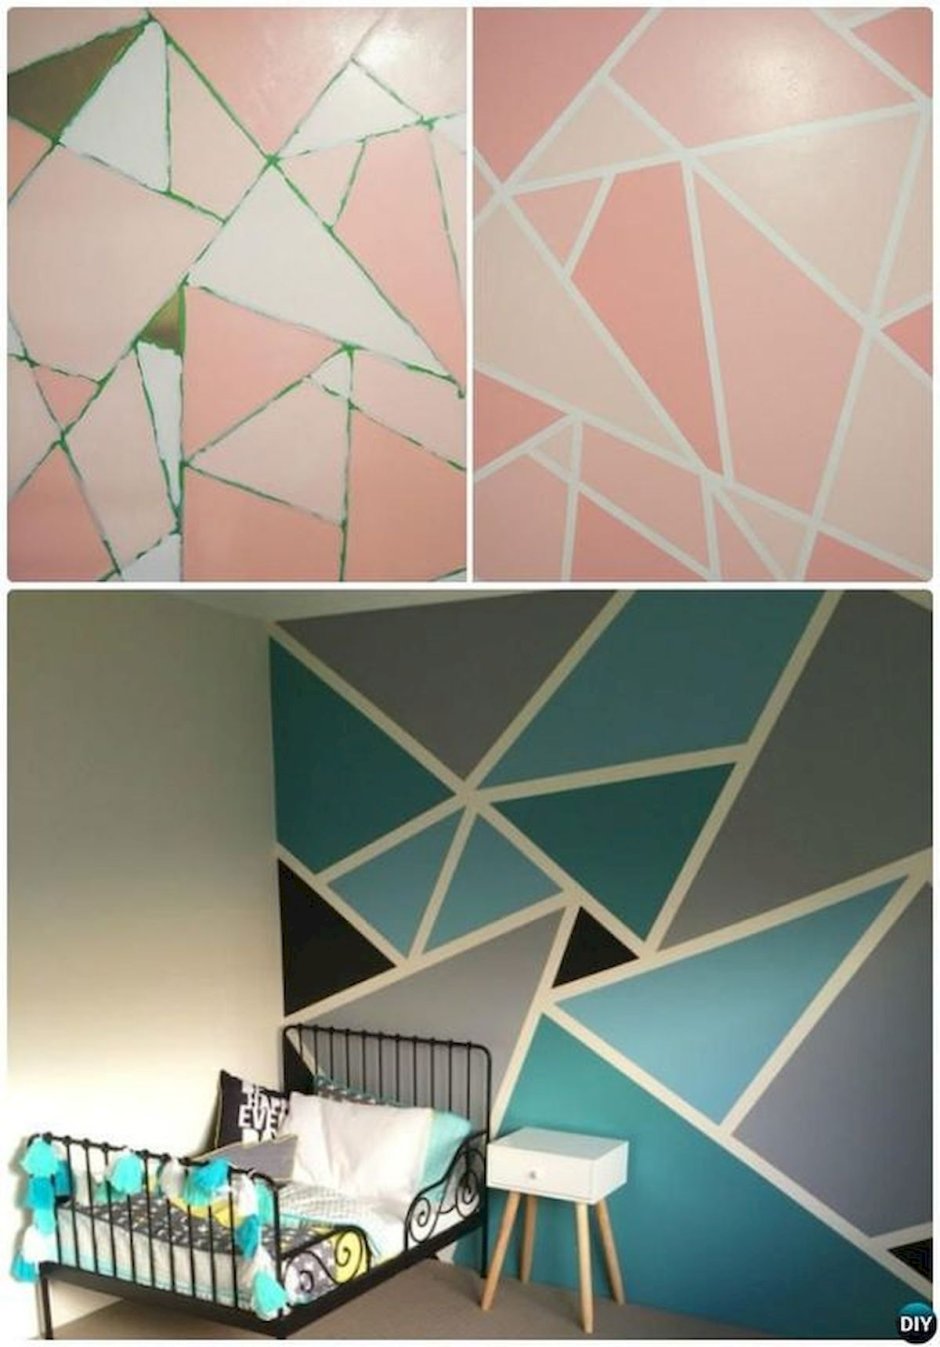 Цветные треугольники на стене